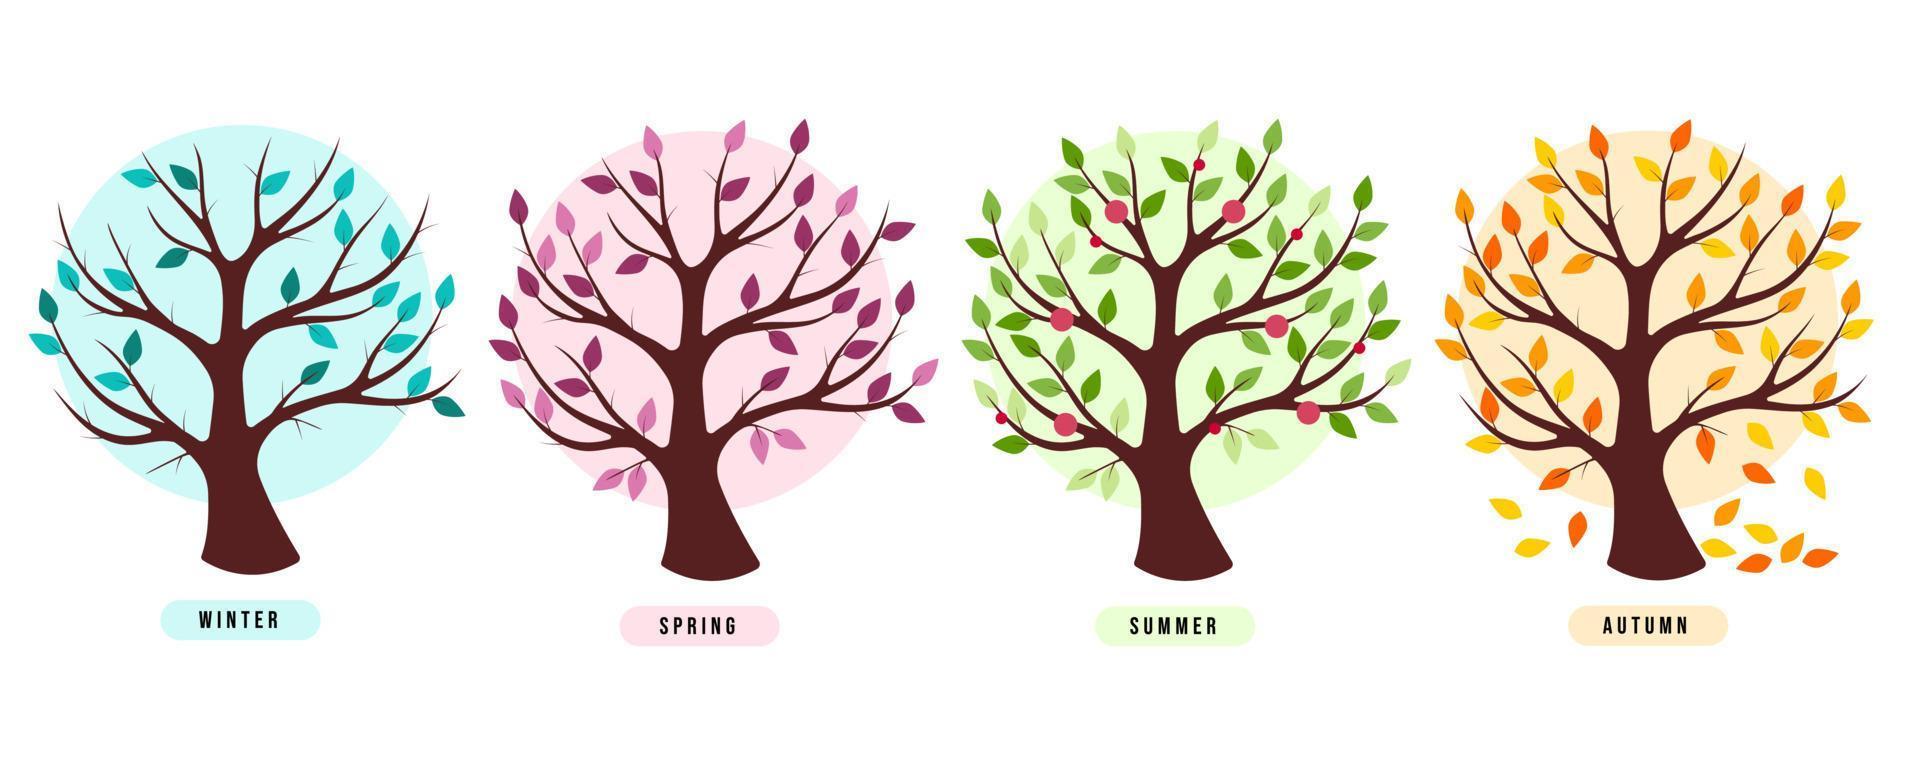 cuatro árboles según las estaciones con título - invierno, primavera, verano, otoño. inscripciones con los nombres de la temporada. fondo de cada árbol en tonos de hojas vector